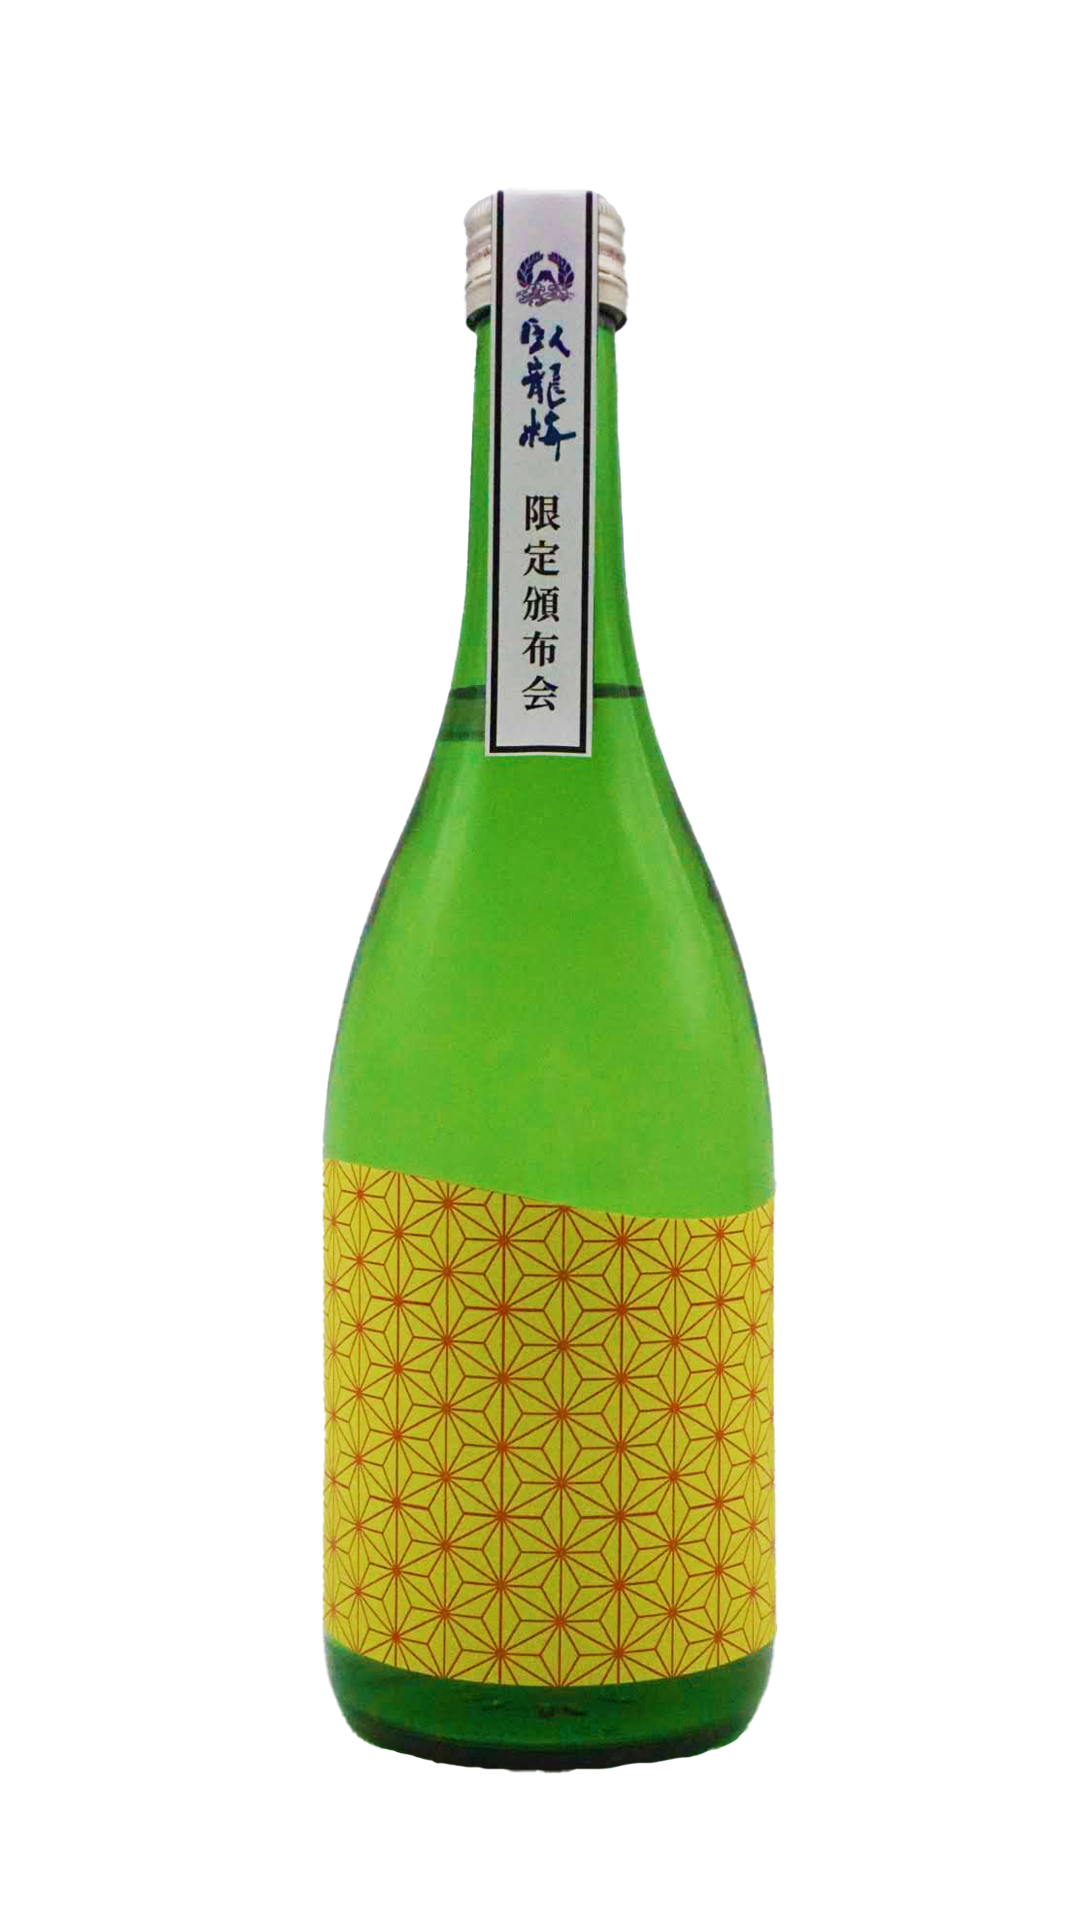 静岡・清水の地酒「臥龍梅」が3ヶ月に渡って自宅に届く企画「臥龍梅 限定頒布会 2021」受付開始